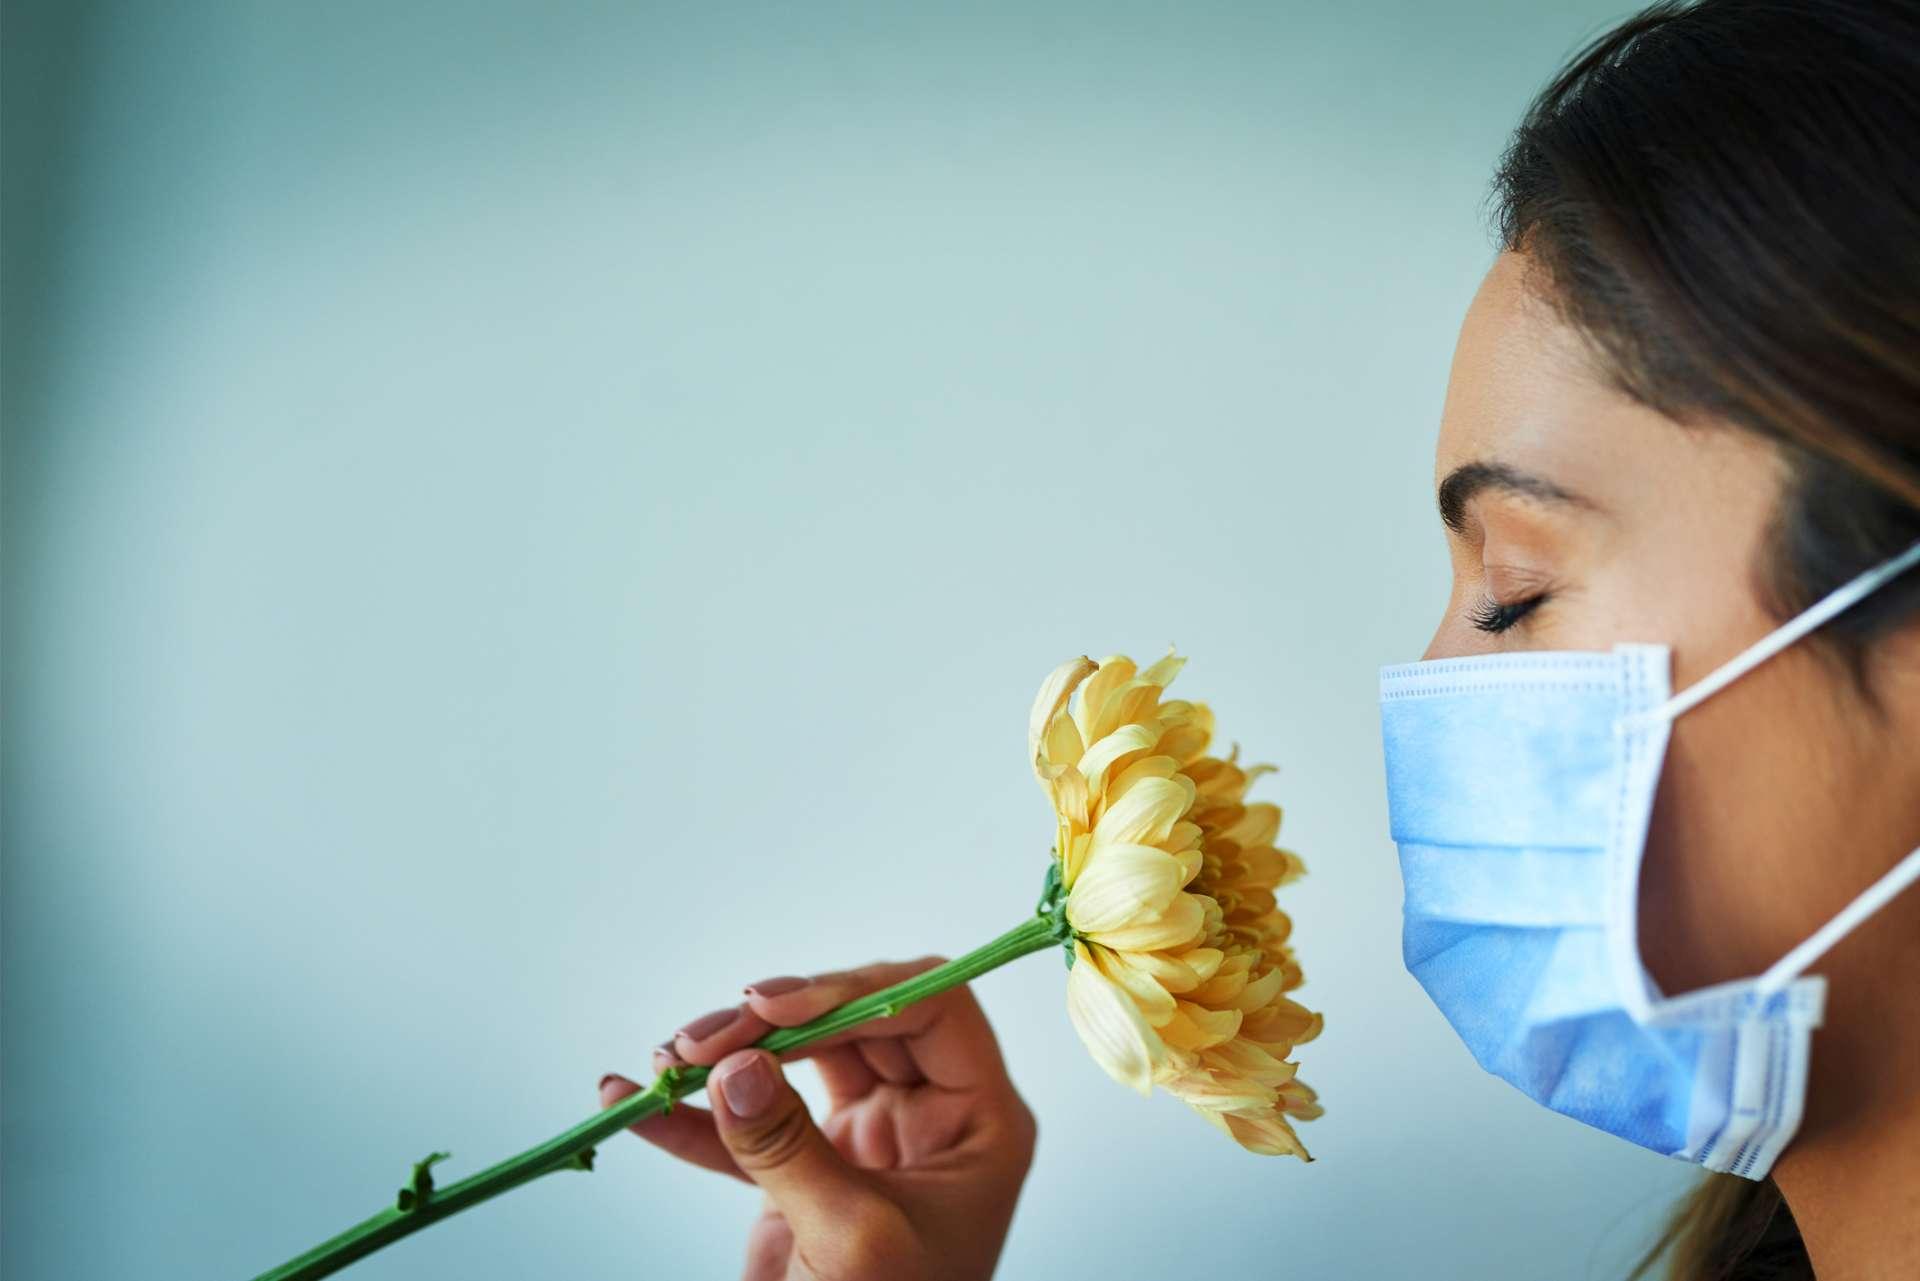 Schuss einer jungen Frau, die eine Blume riecht, während sie eine chirurgische Maske trägt